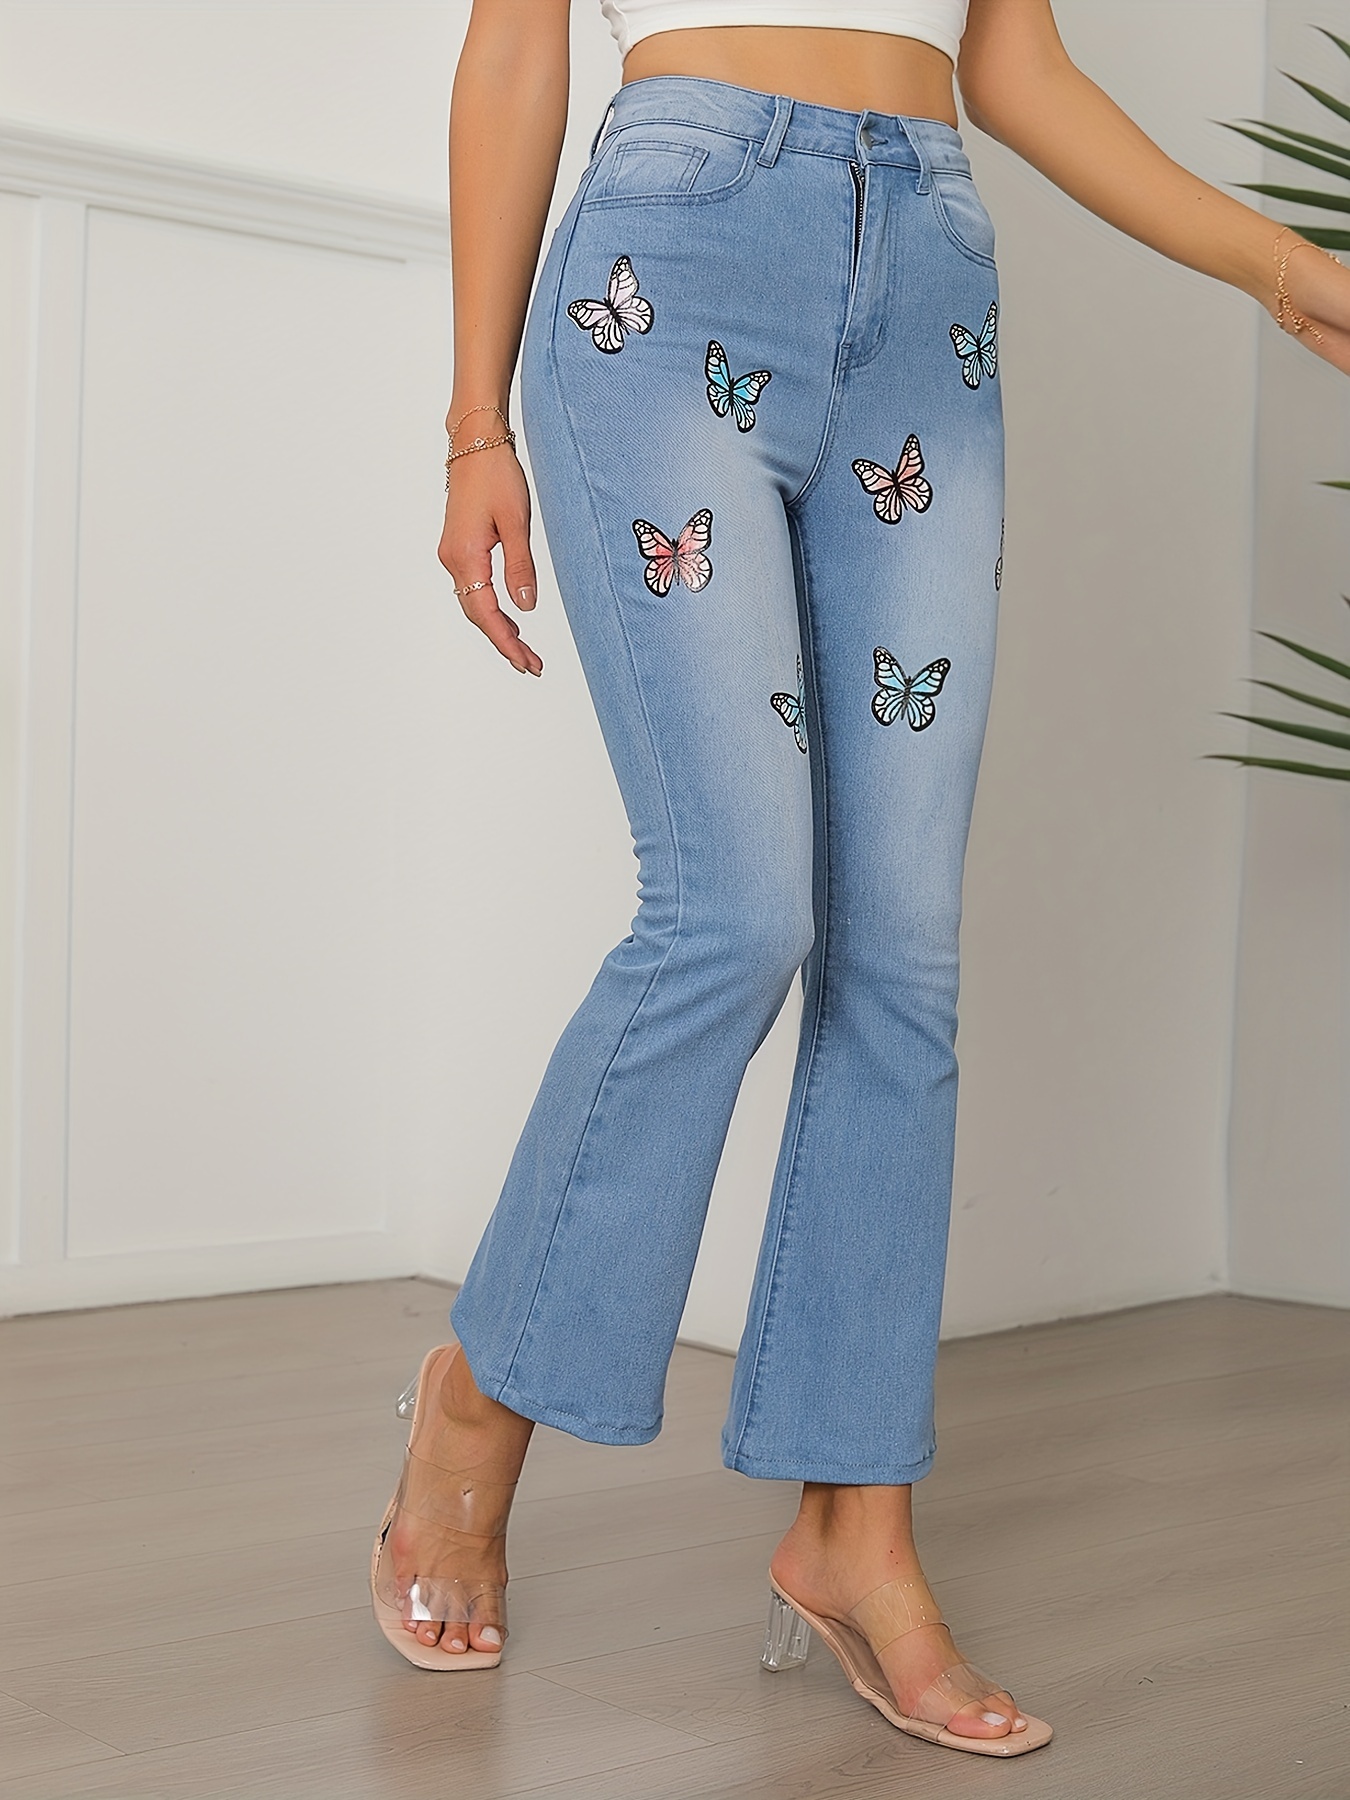 Edvintorg Flower/Butterfly Jeans For Women Sexy Elegant Denim